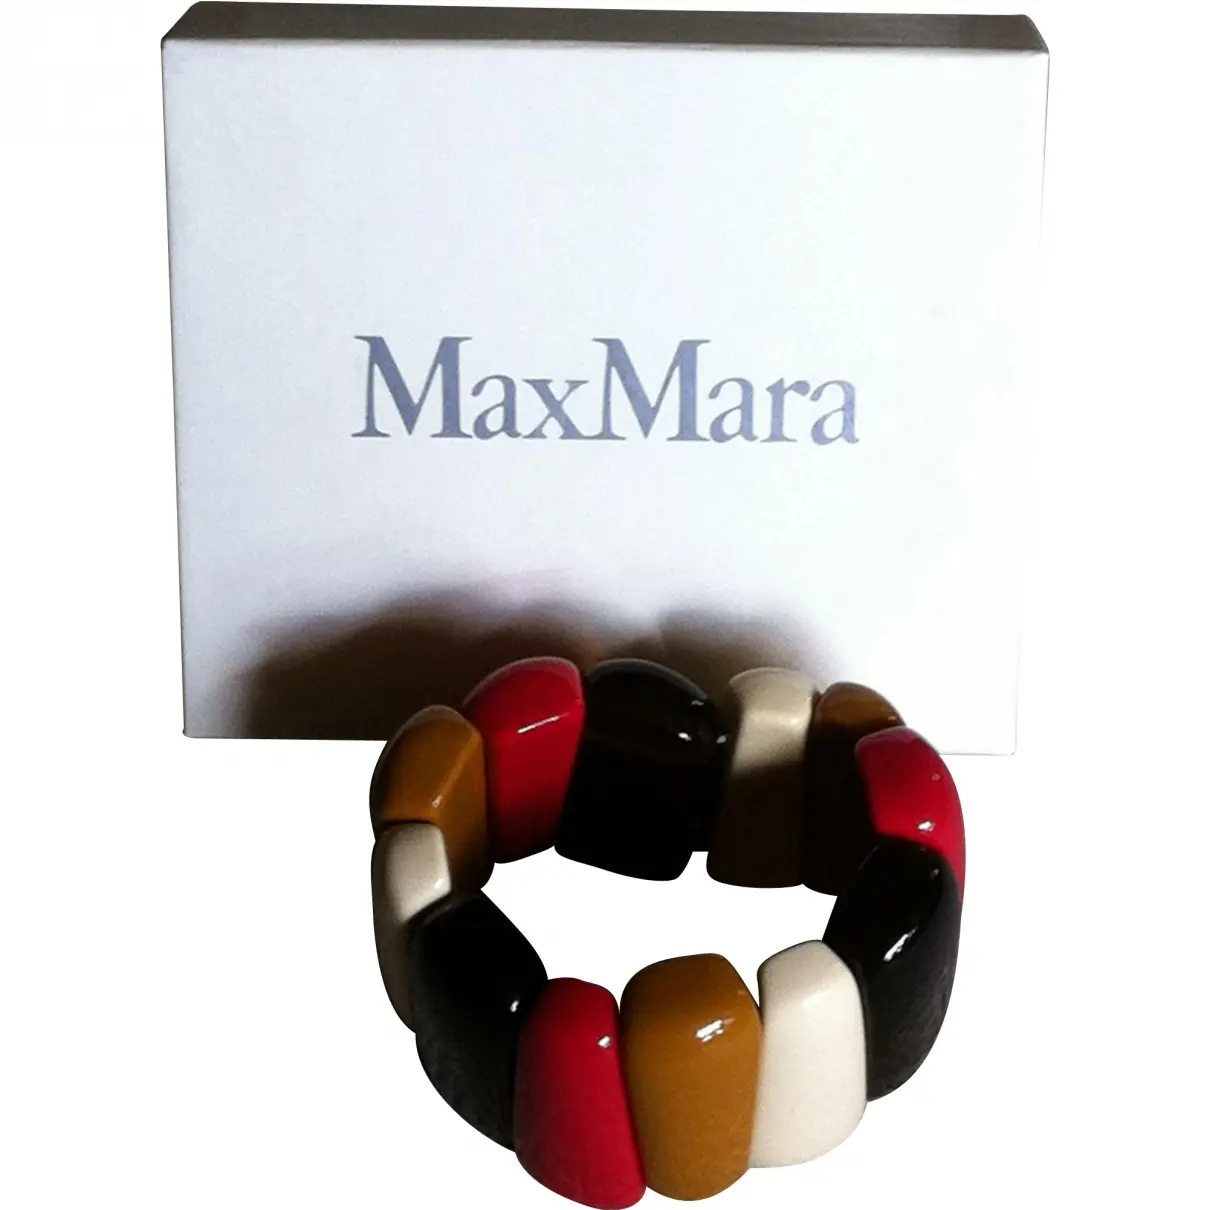 Plastic Bracelet Max Mara